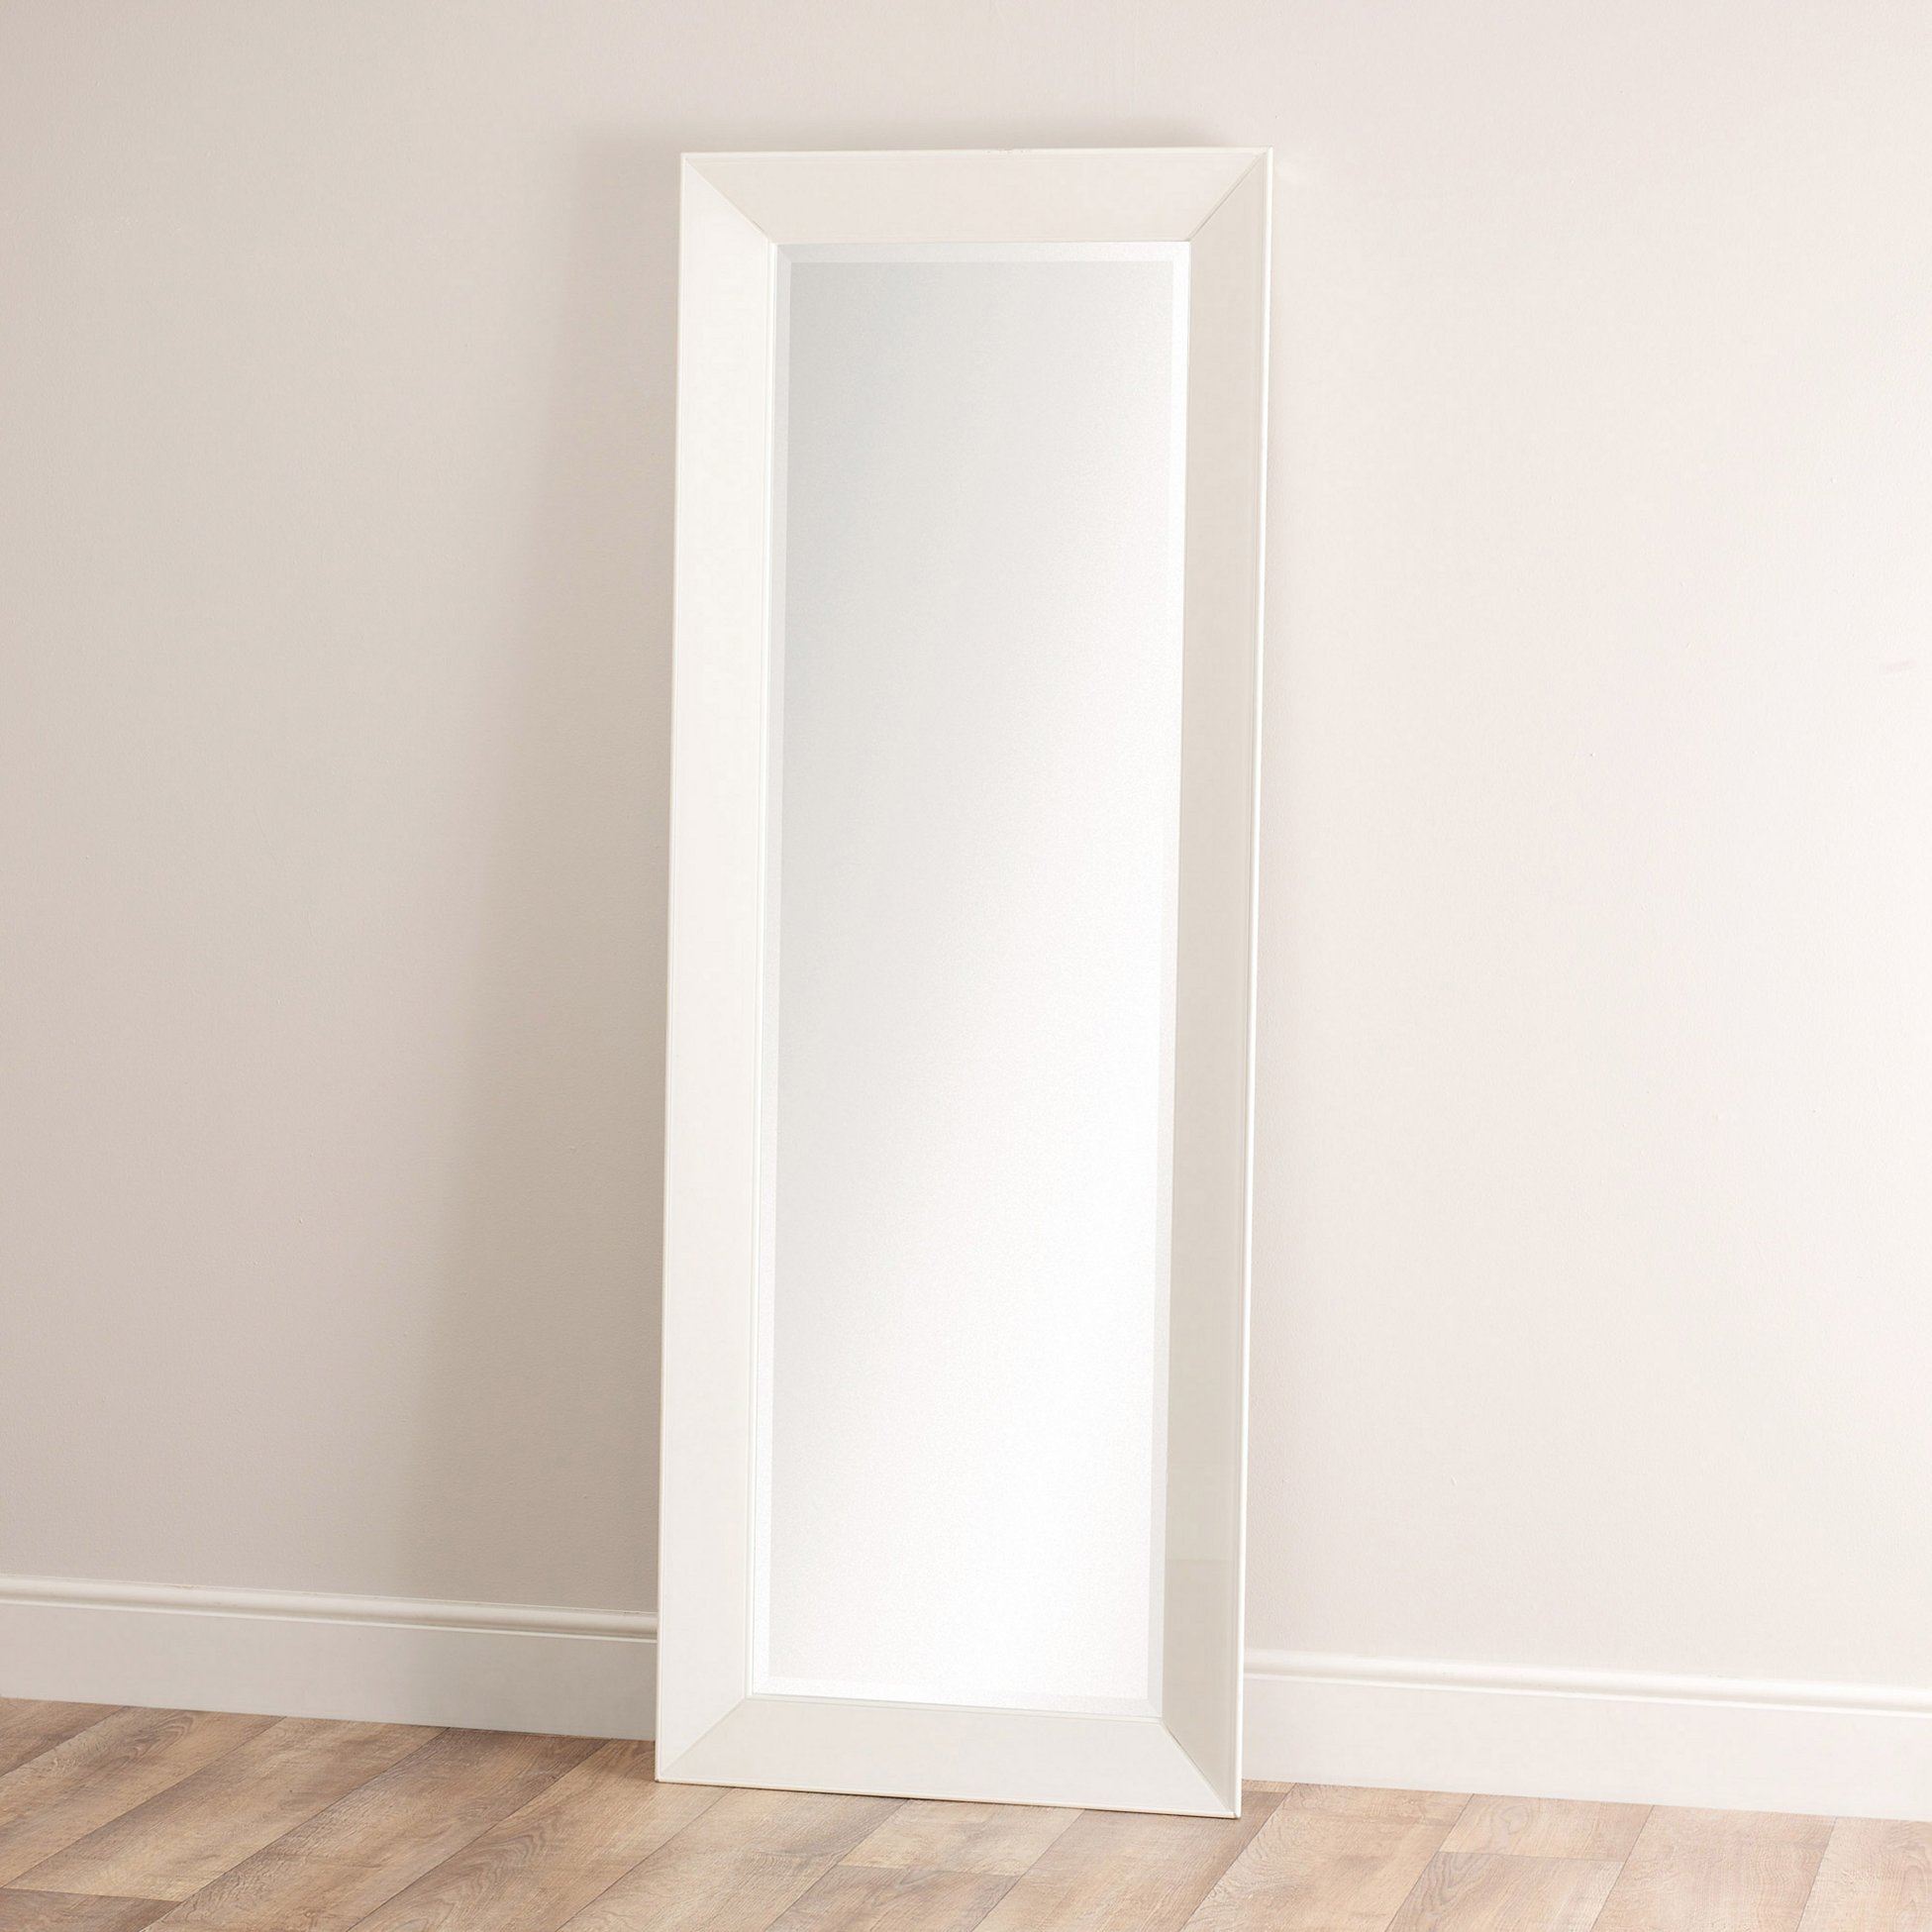 Carlton Glass Framed Full Length Mirror, White Framed Full Length Mirror Uk